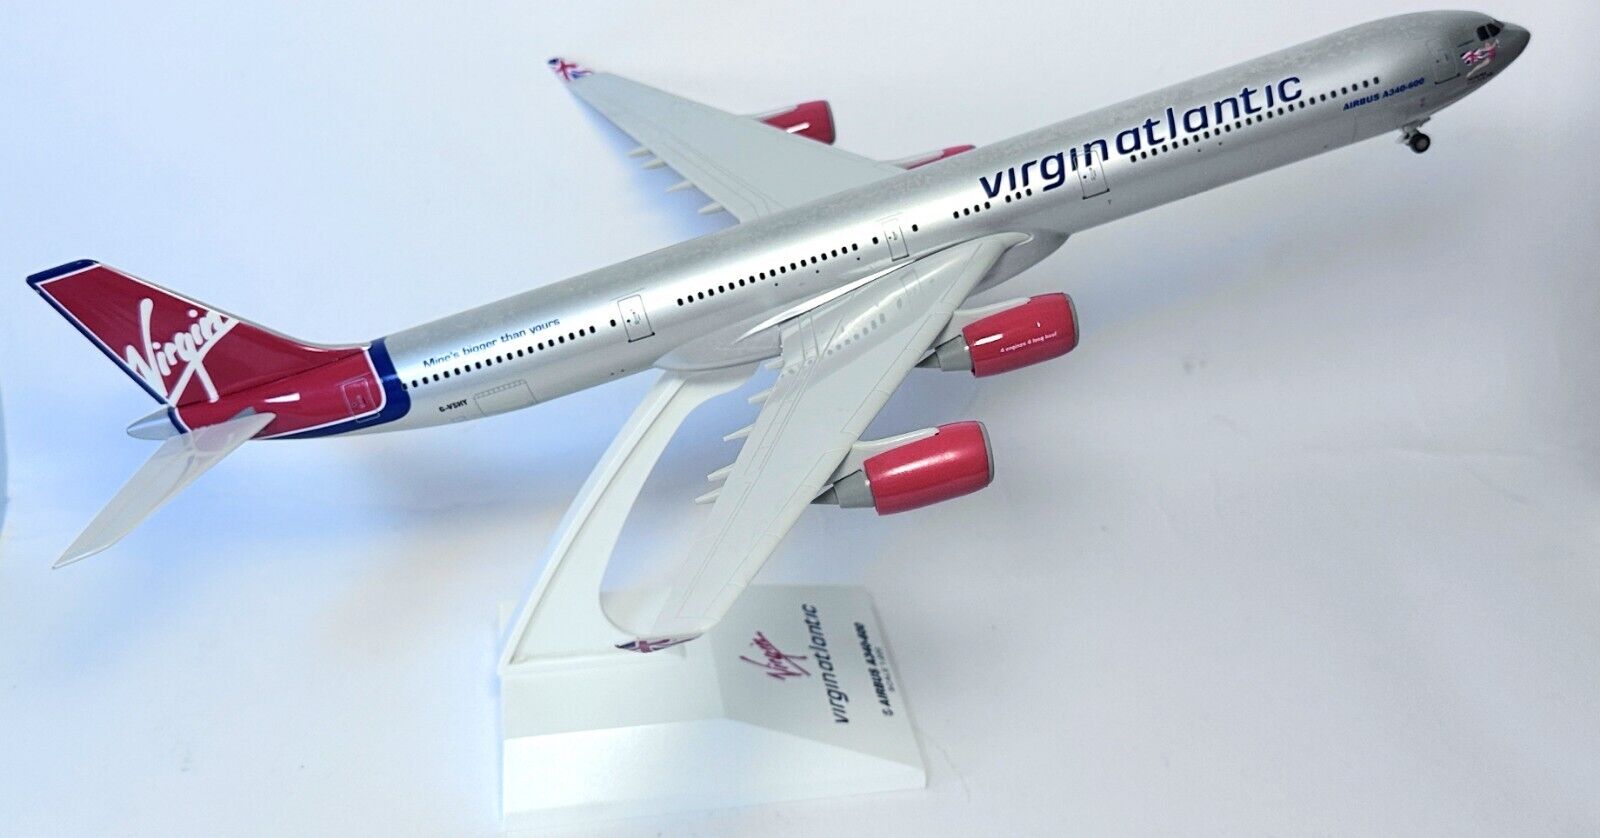 Airbus A340-600 Virgin Atlantic Airways Skymarks Model Scale 1:200 G-VSHY